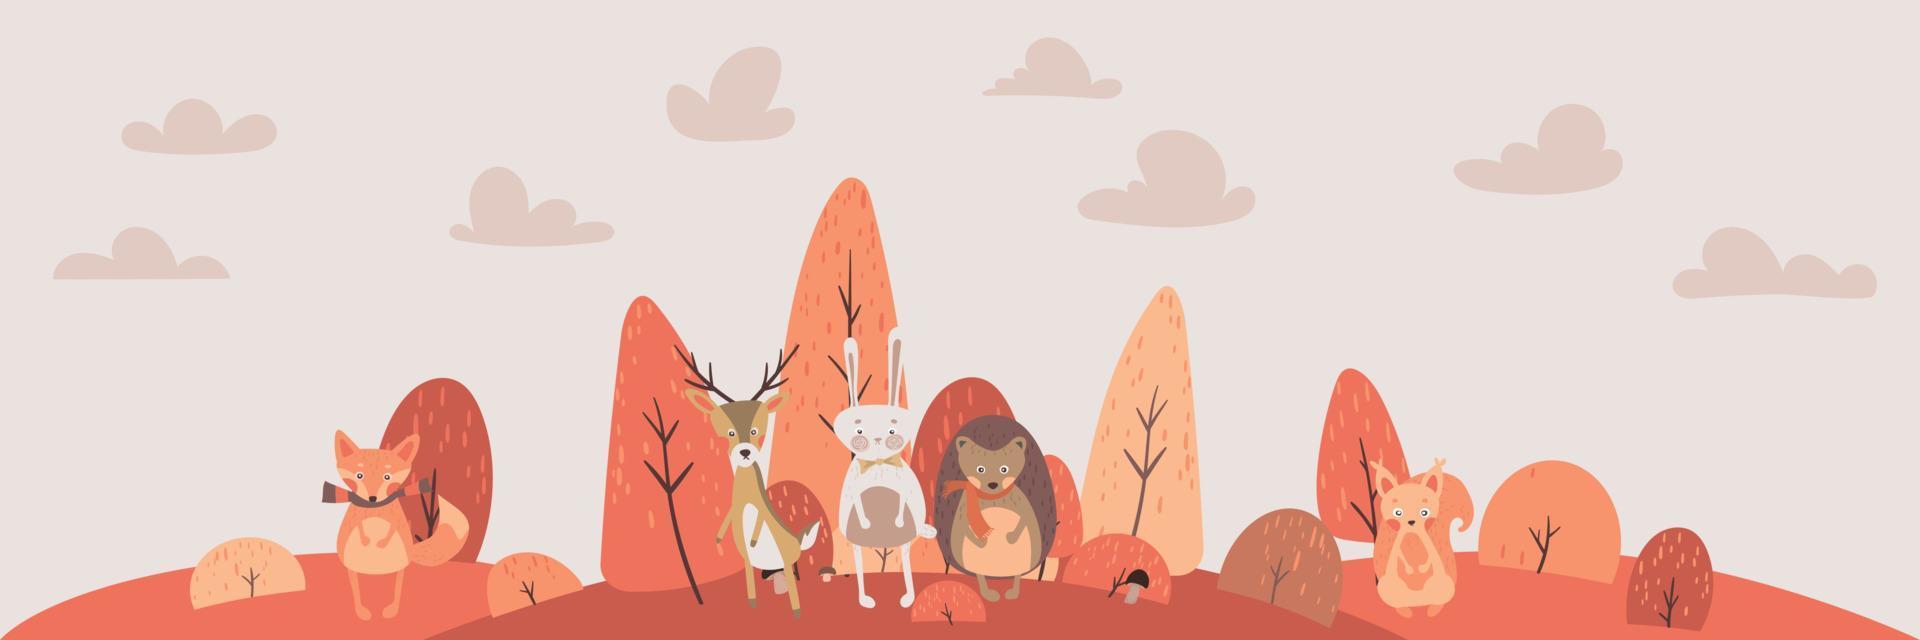 vectorillustratie van schattige bos bos dieren herten, konijnen, egel, vos, eekhoorn. cartoon herfst dier. val boom bos karakter. geweldig voor baby shower en baby design. vector